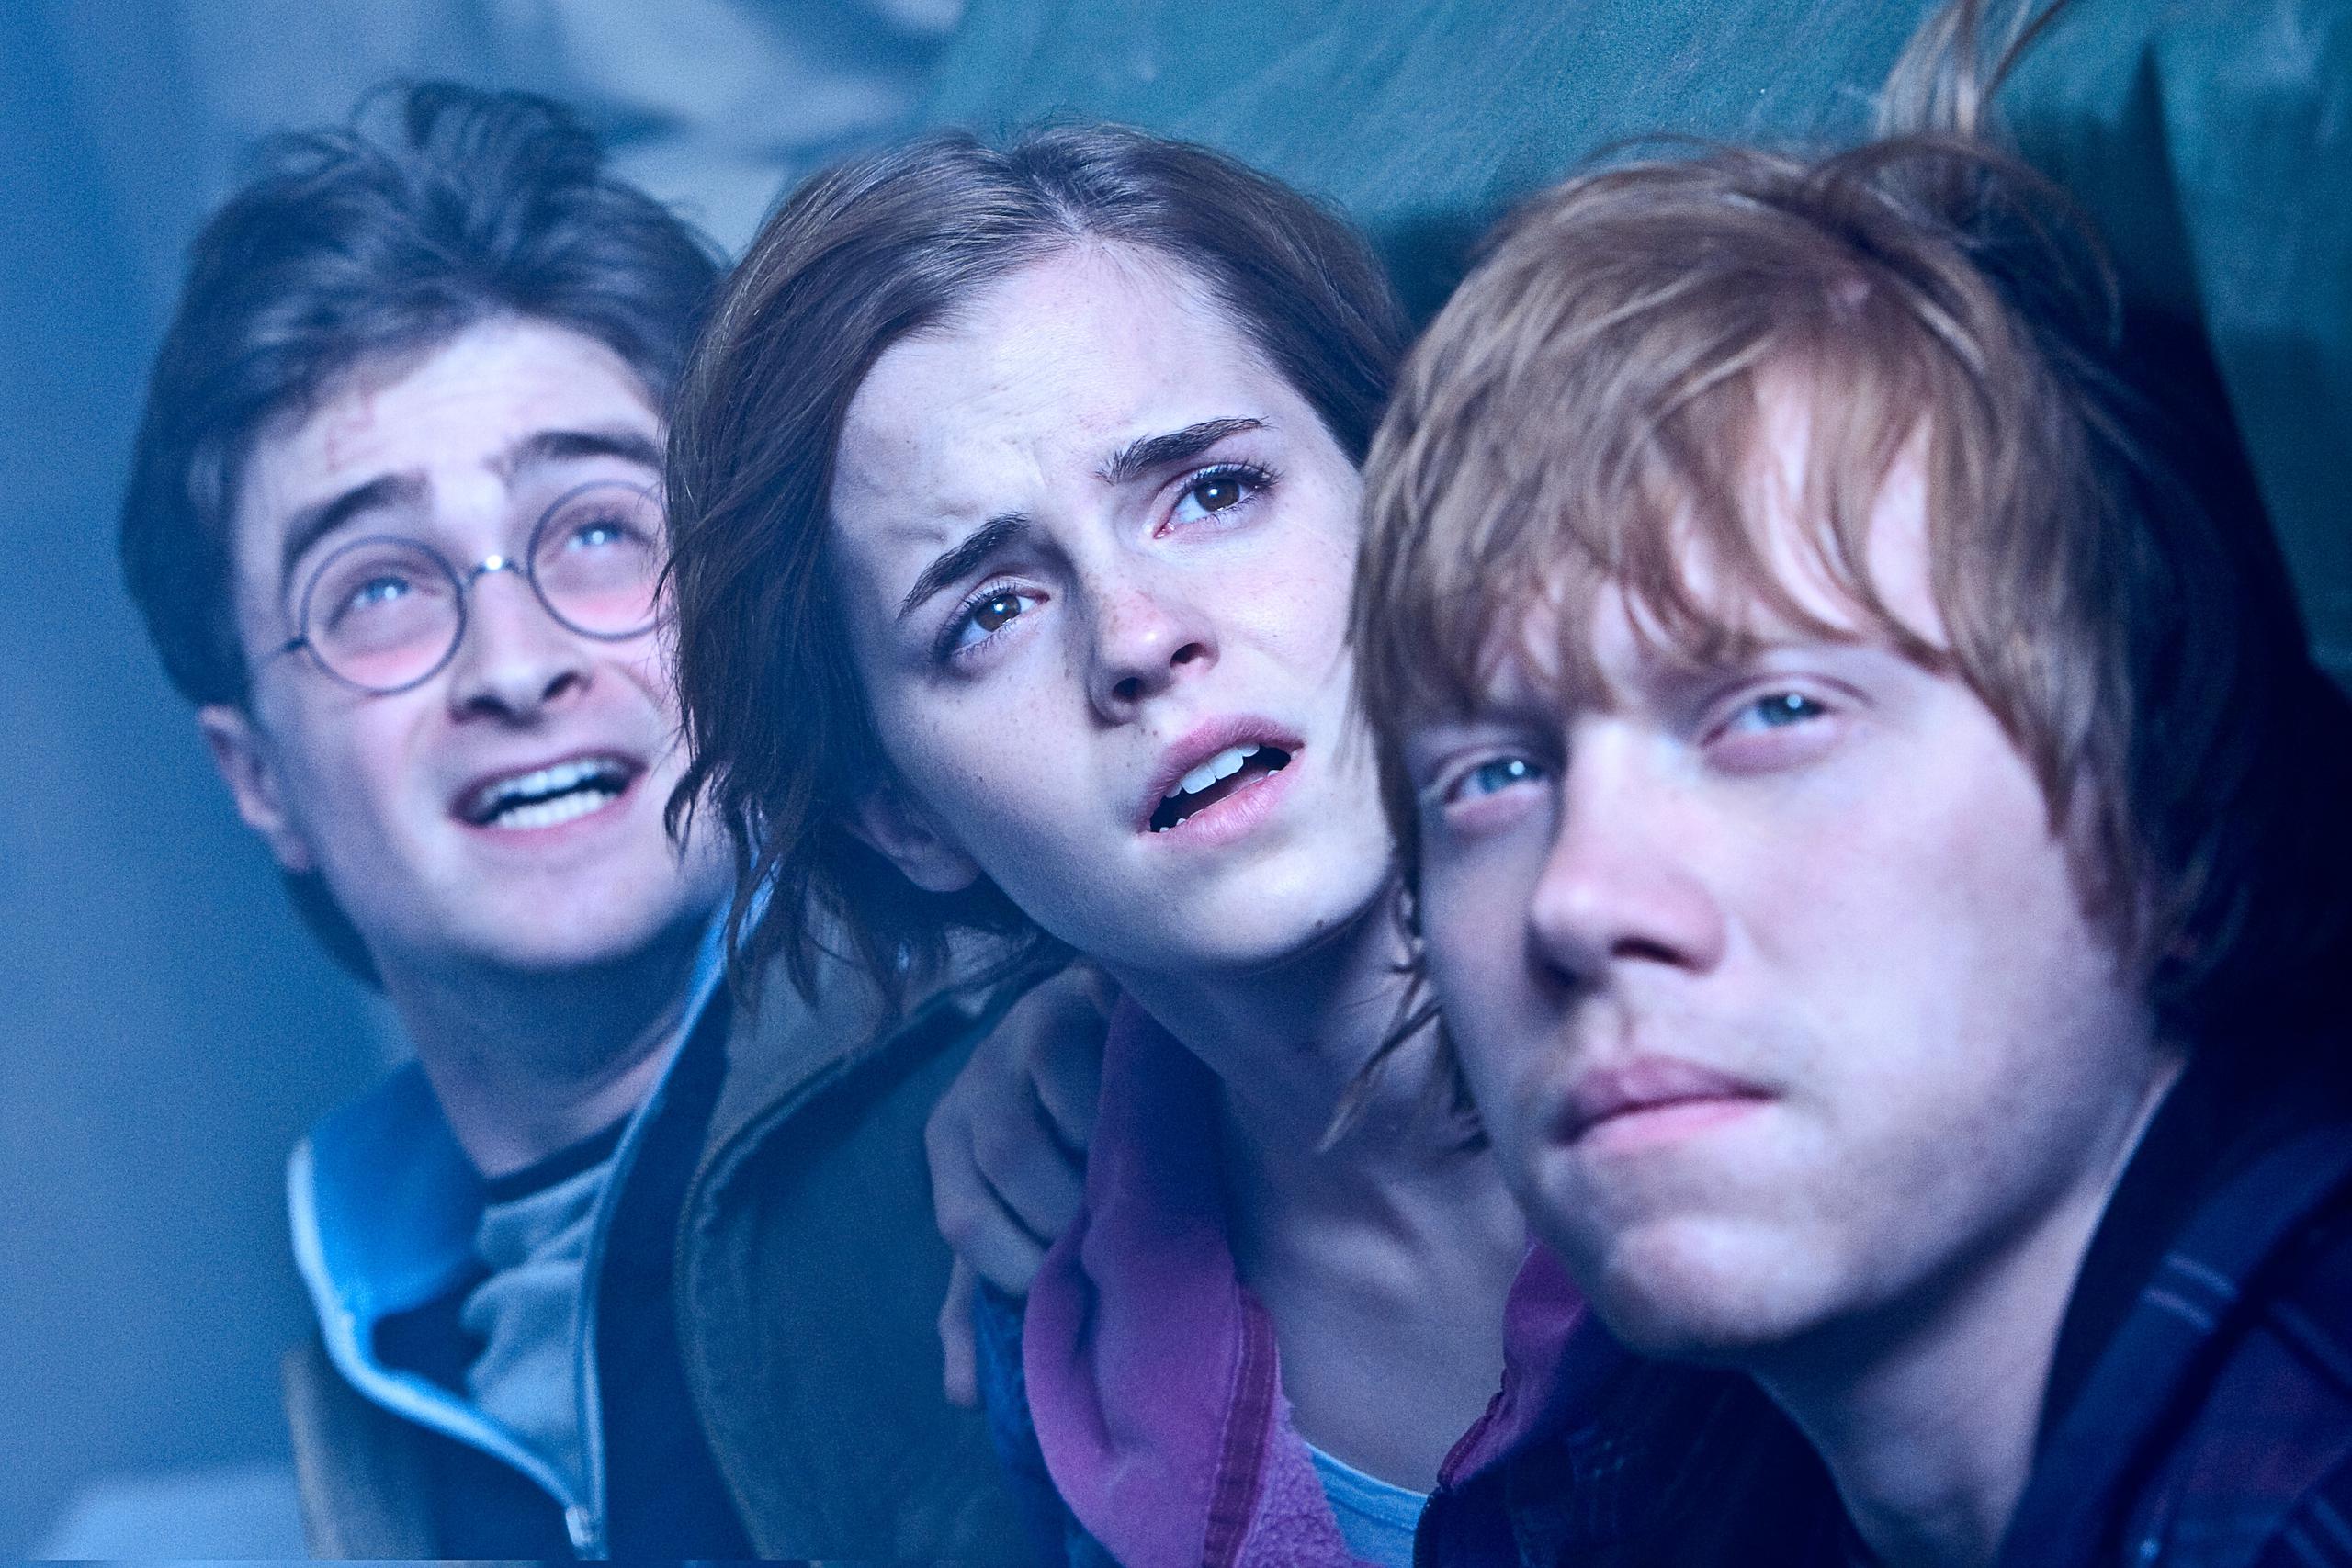 Las aventuras de Harry, Hermione y Ron inspiran los contenidos que se encuentran en el sitio especial.